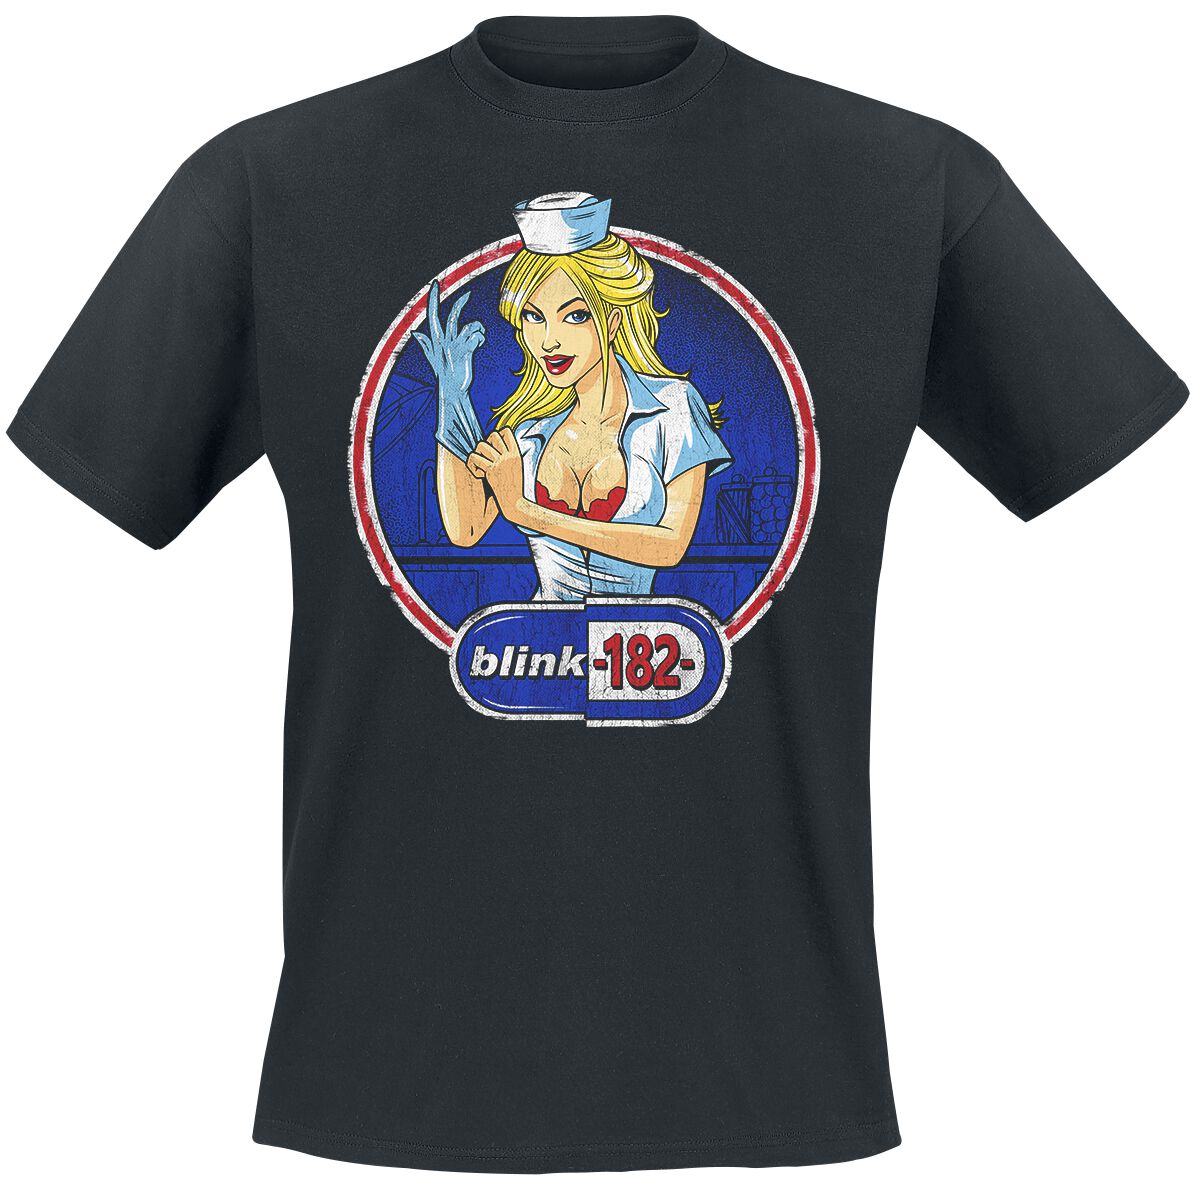 Blink-182 T-Shirt - Enema Nurse - S bis 3XL - für Männer - Größe S - schwarz  - Lizenziertes Merchandise!